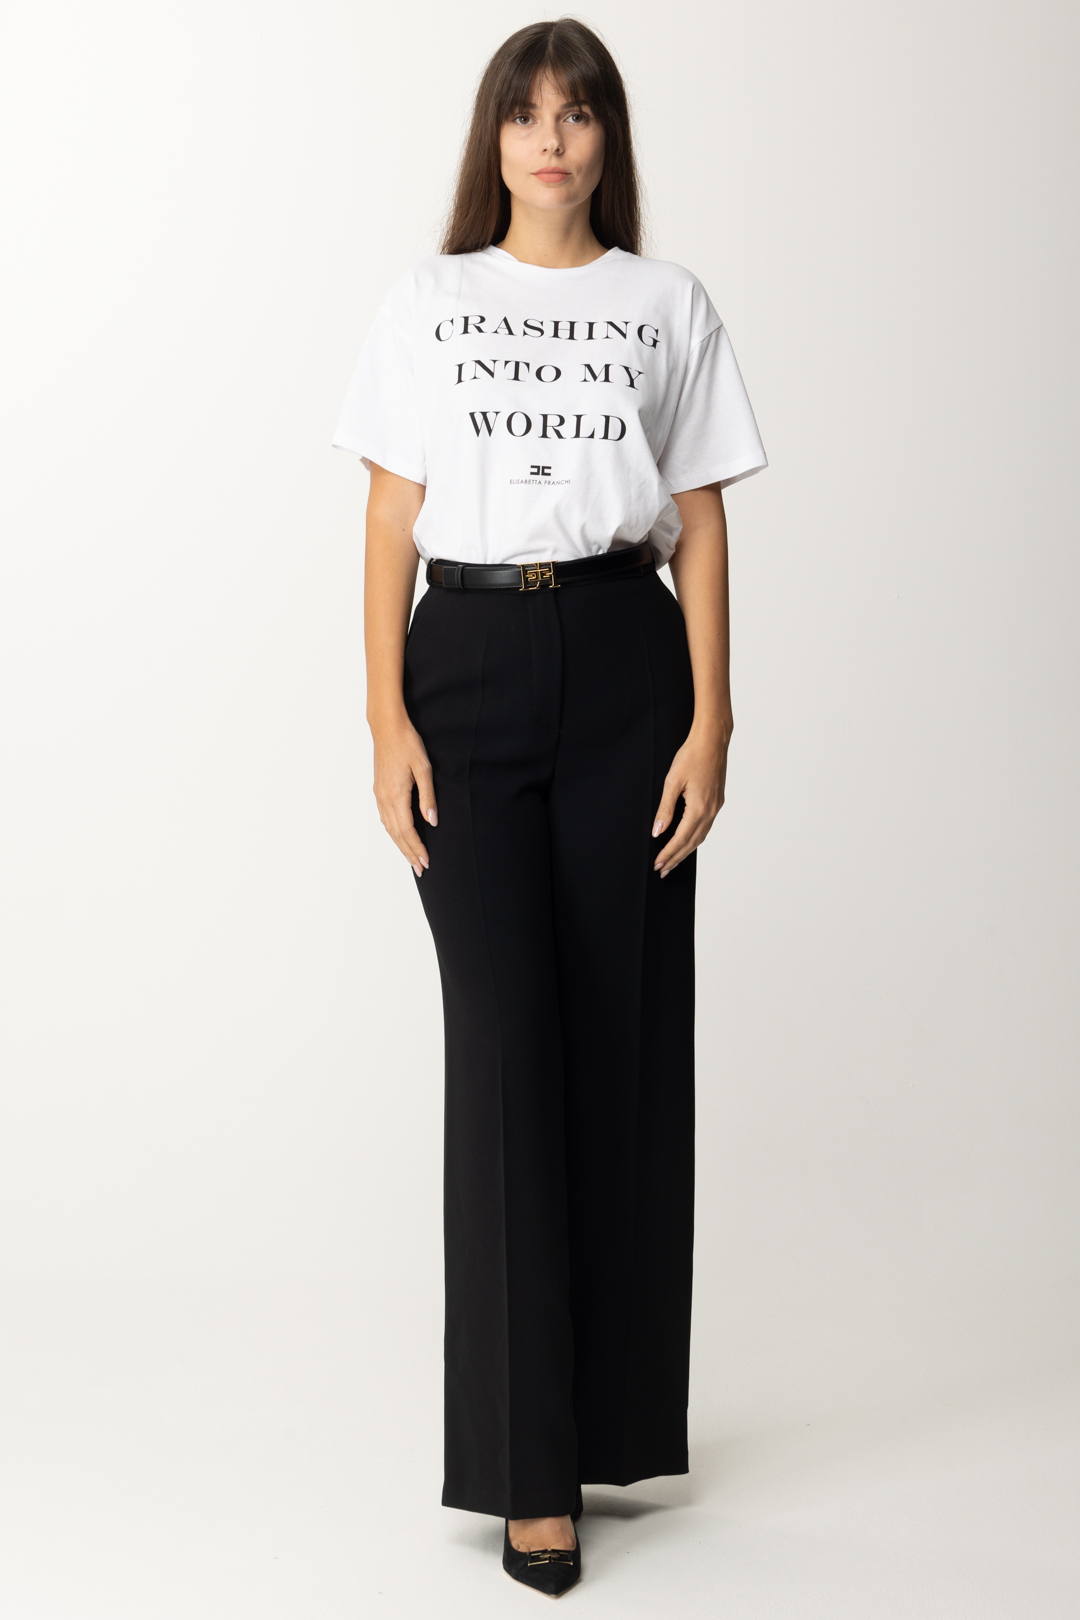 Vorschau: Elisabetta Franchi Übergroßes T-Shirt mit Aufdruck Gesso